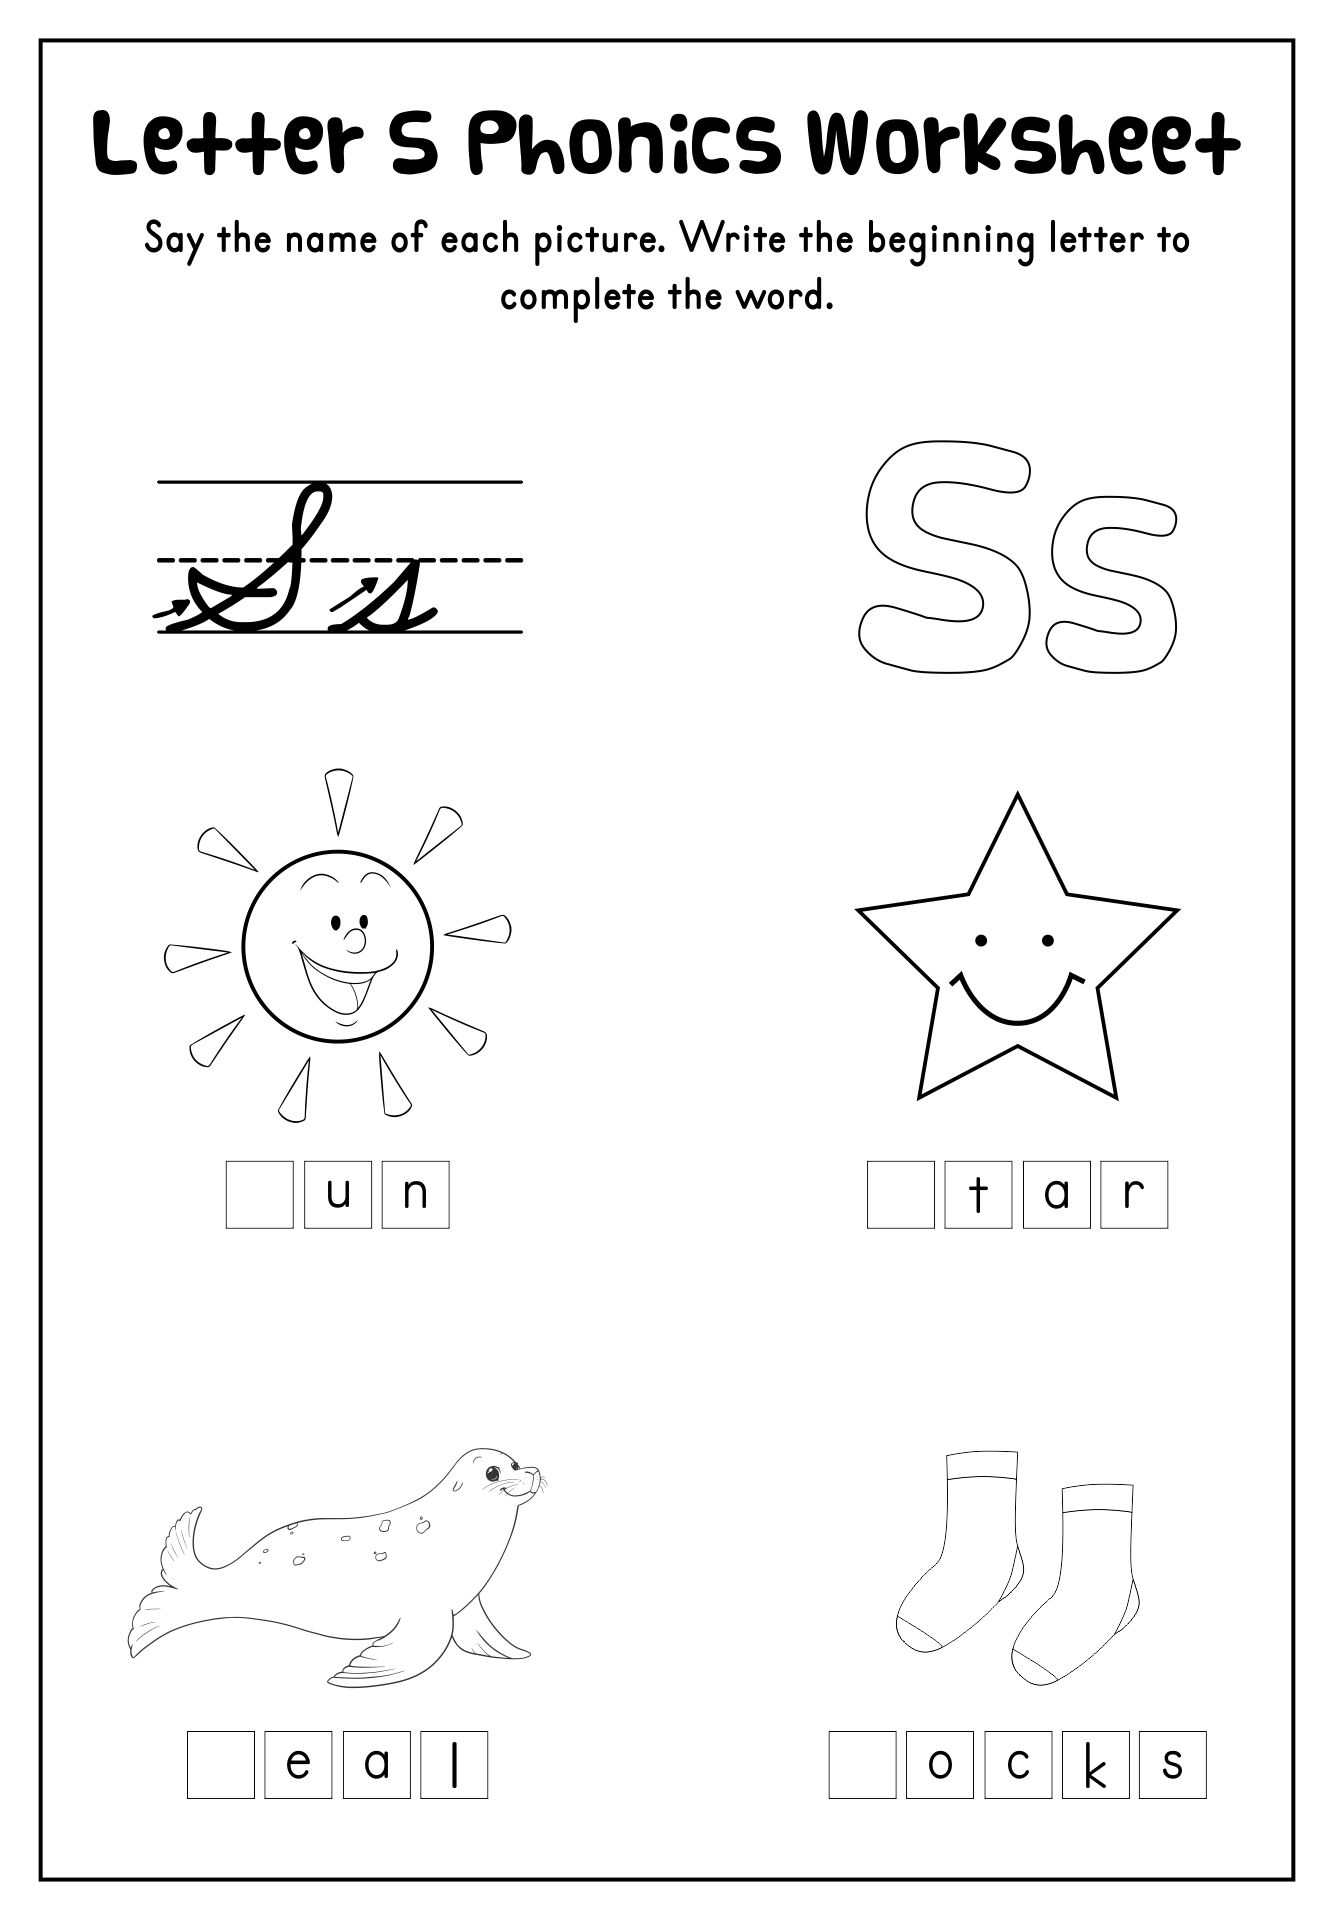 Printable Letter S Phonics Worksheet For Preschool